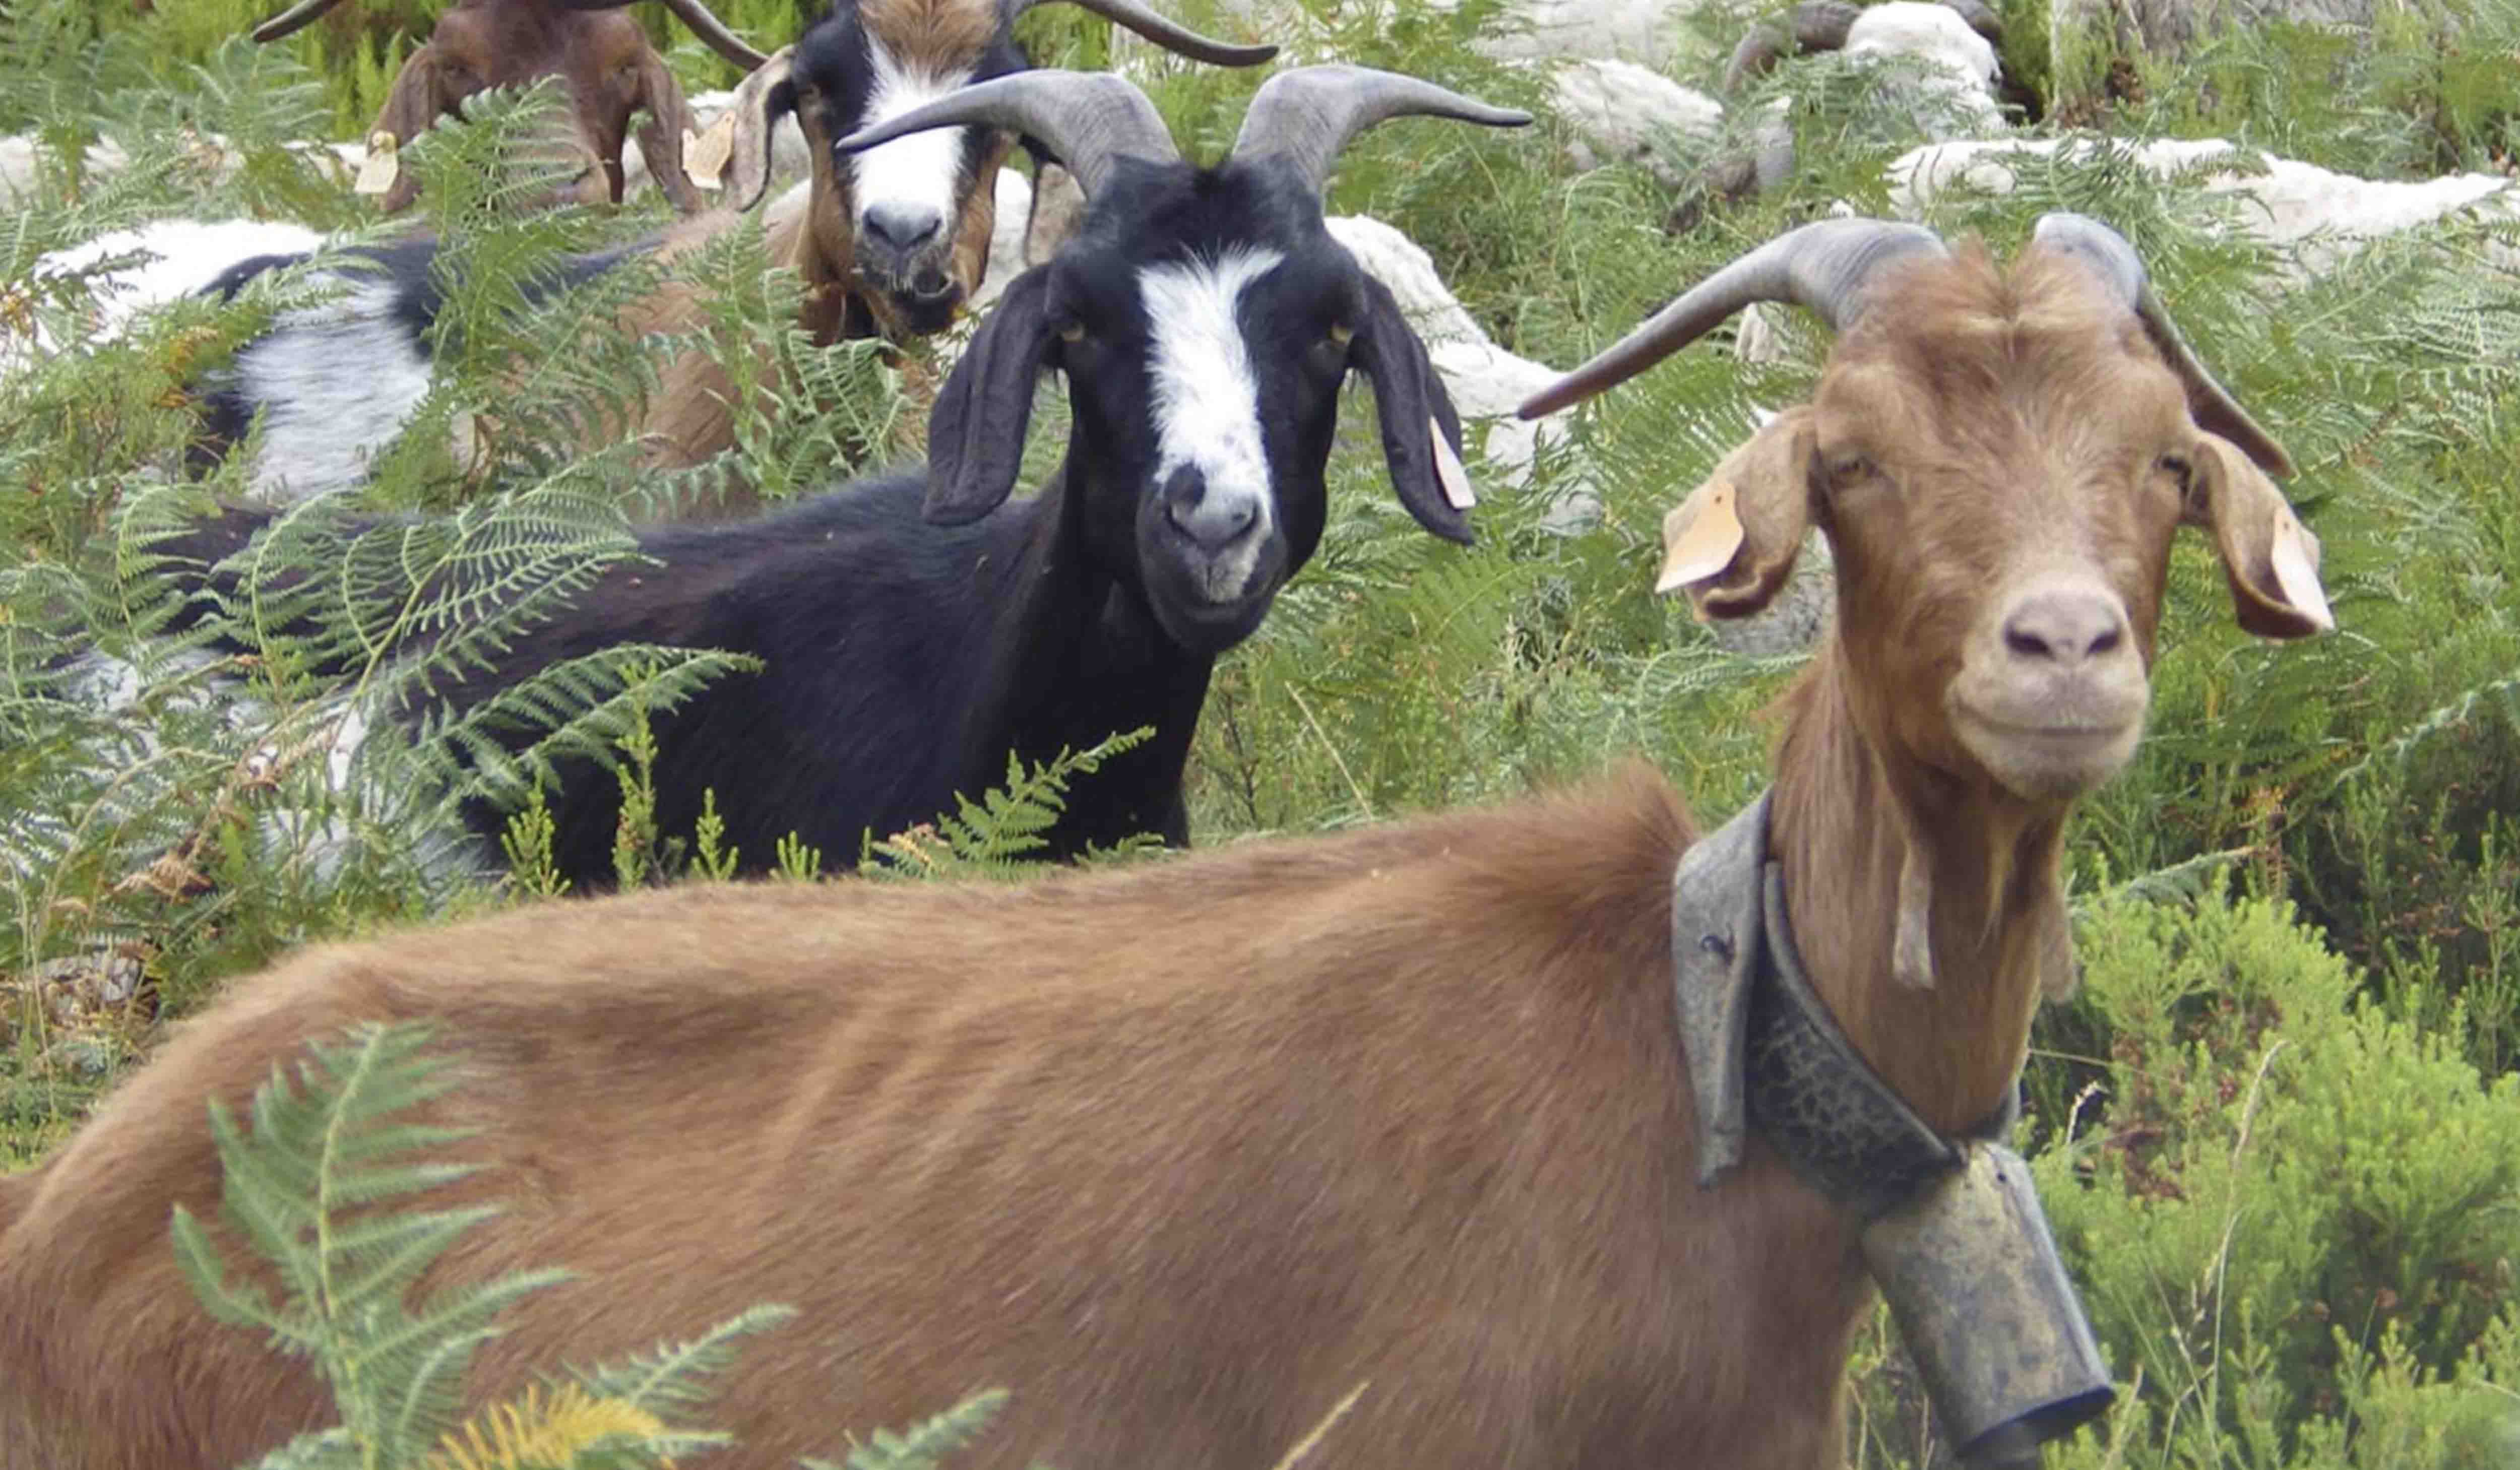 Câmara apoia criação de ovinos e caprinos – Candidaturas até 16 de junho!